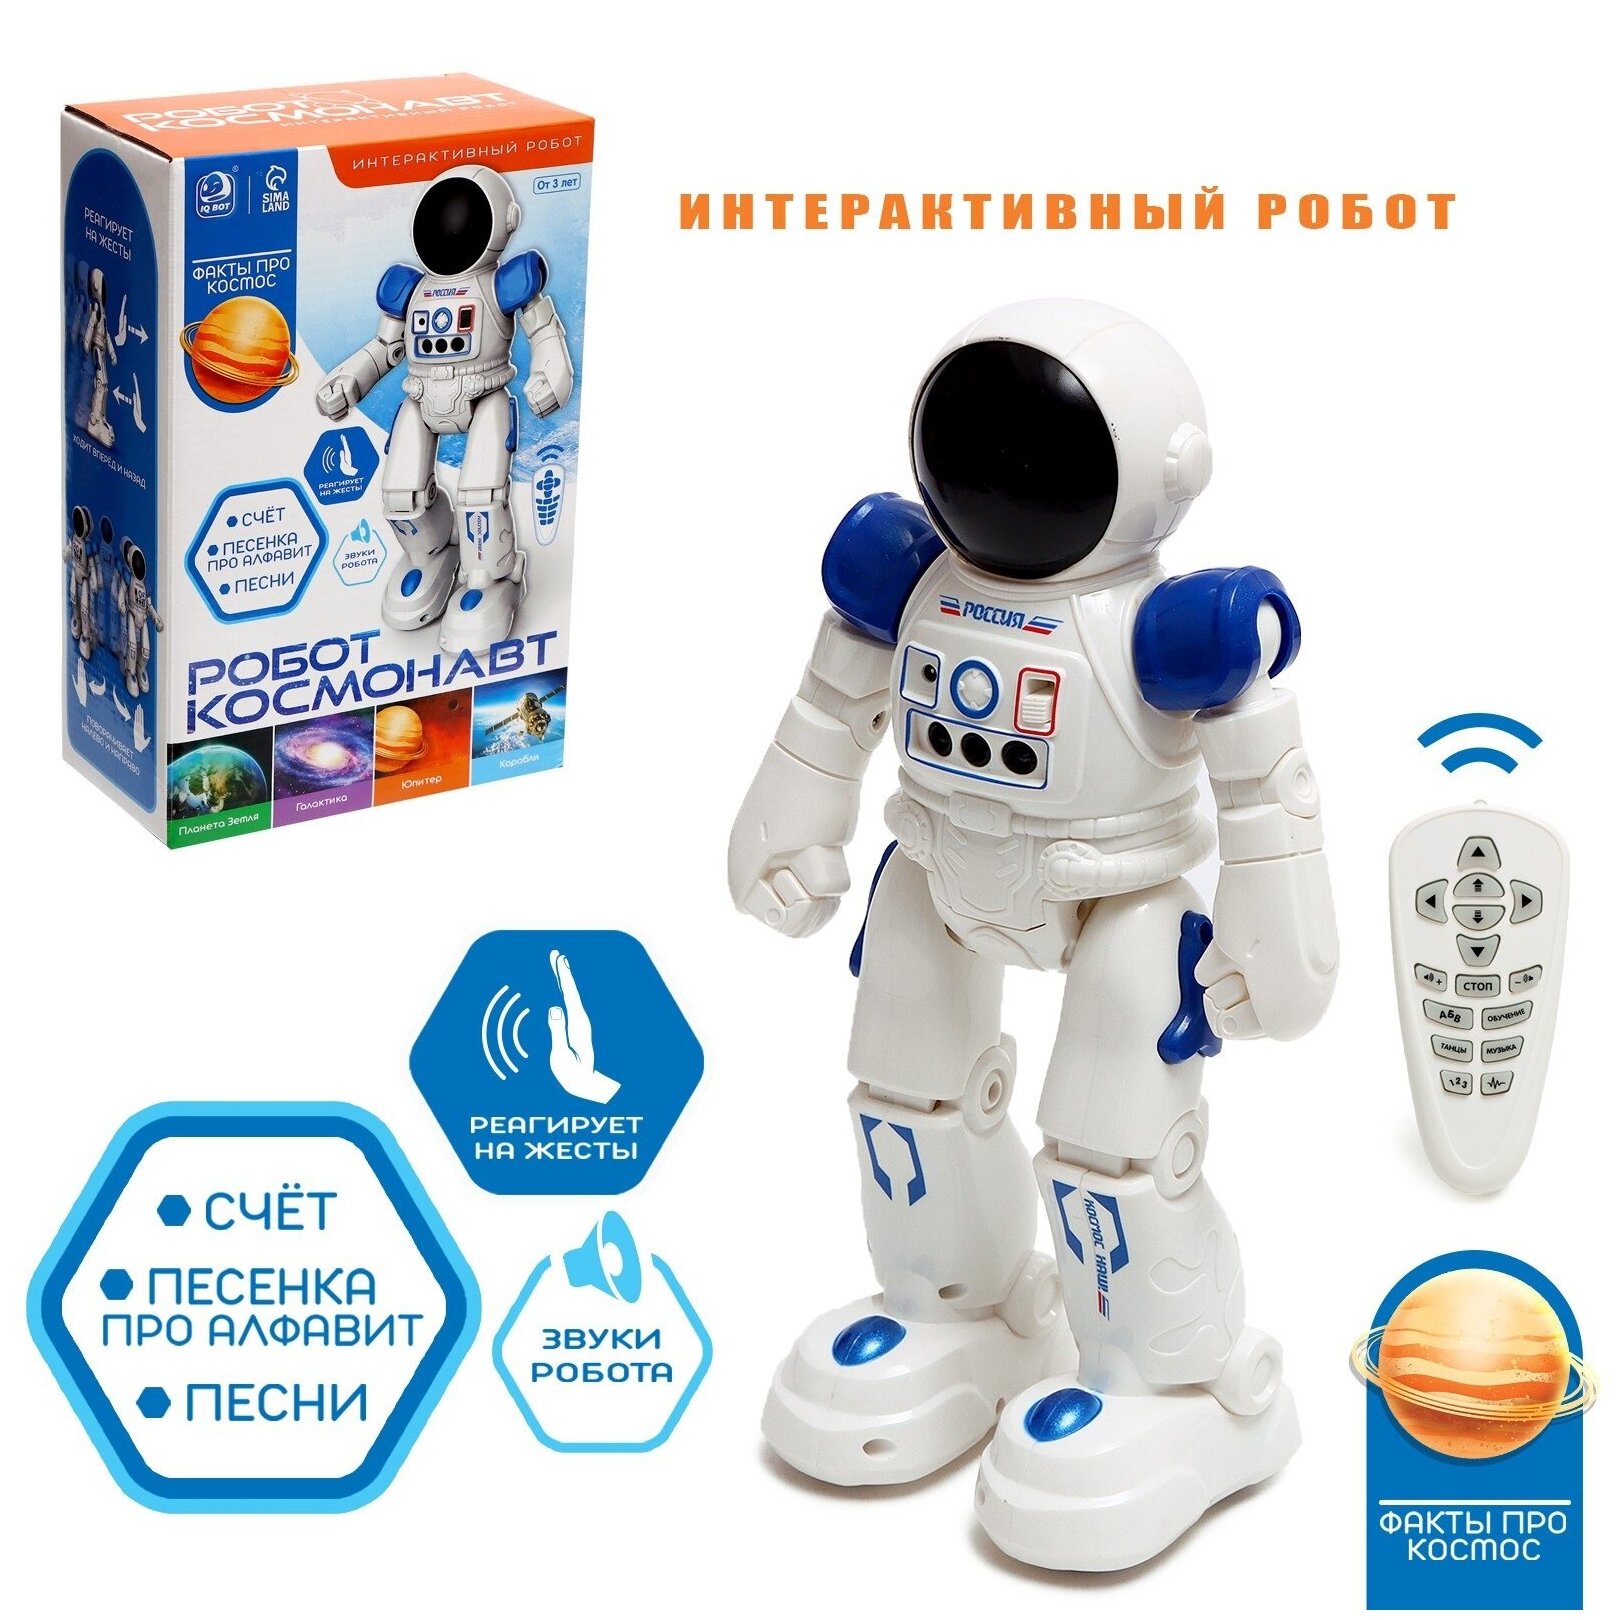 Робот интерактивный "Космонавт", русское озвучивание, упр жестами, аккумулятора SL-05940 9086845